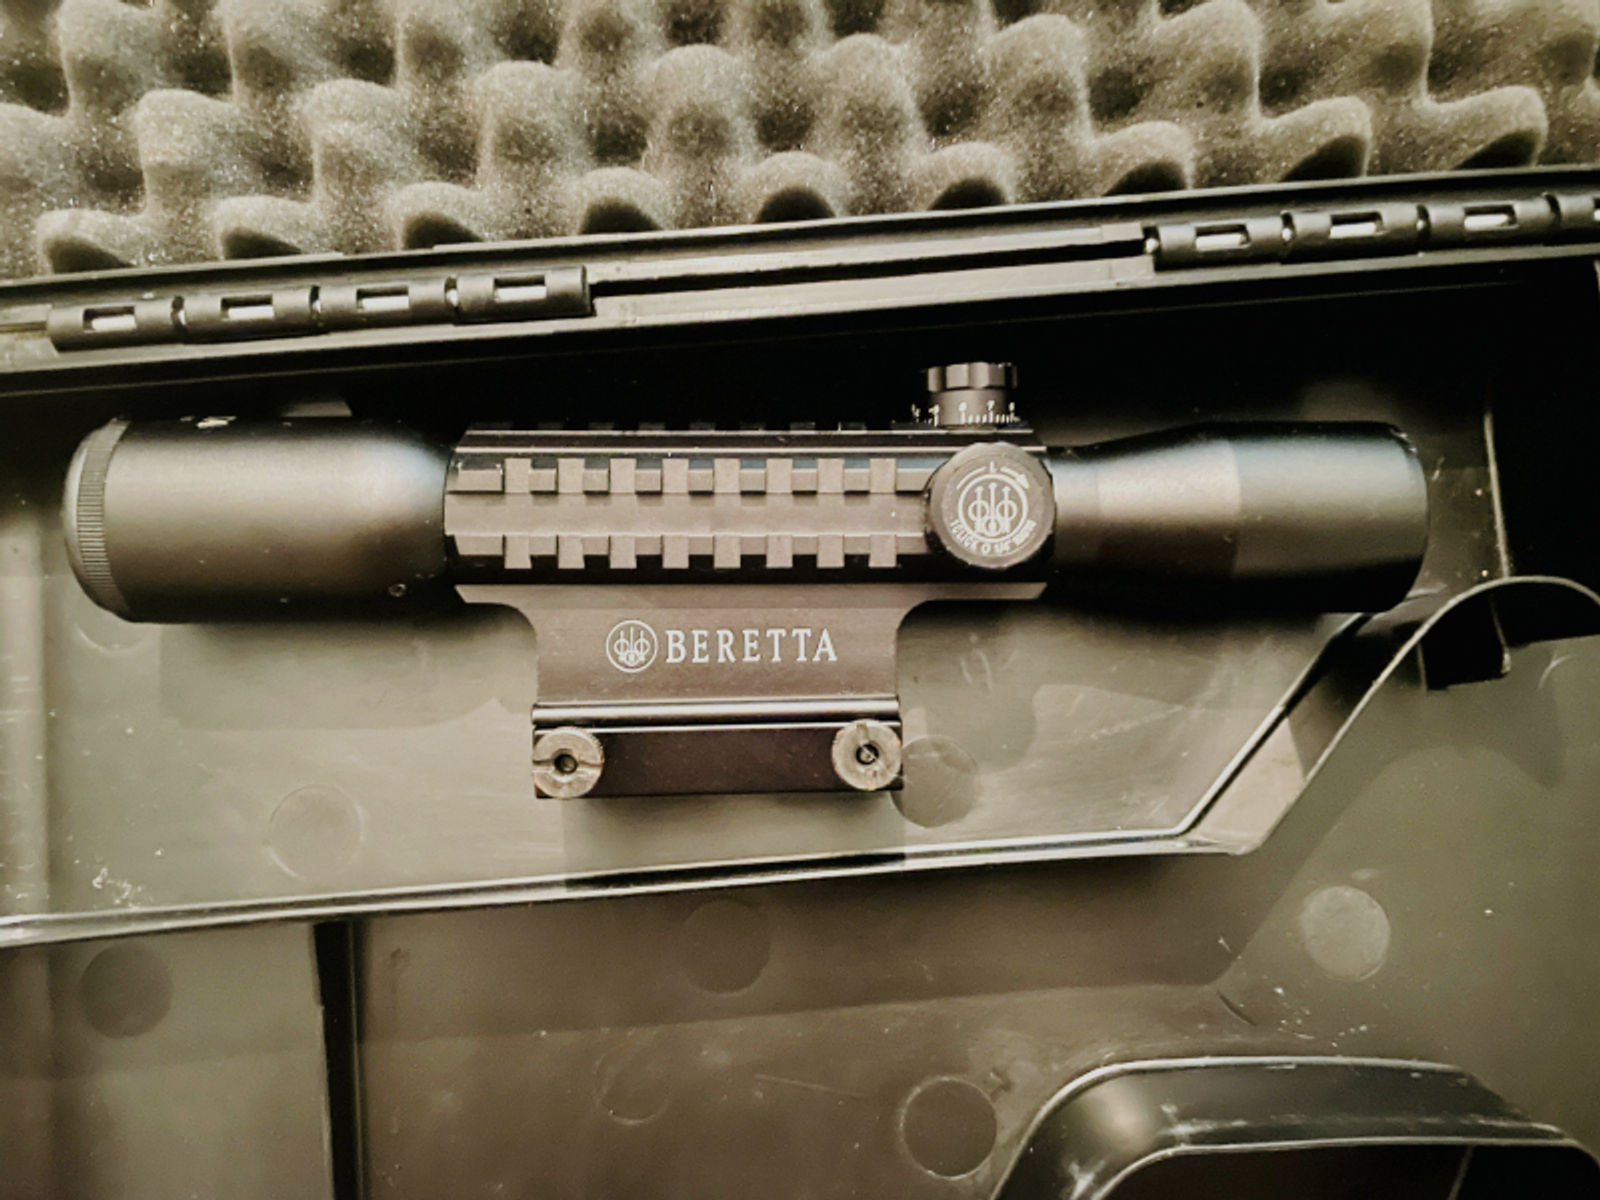 Beretta Cx4 Storm Koffer und Zielfernrohr